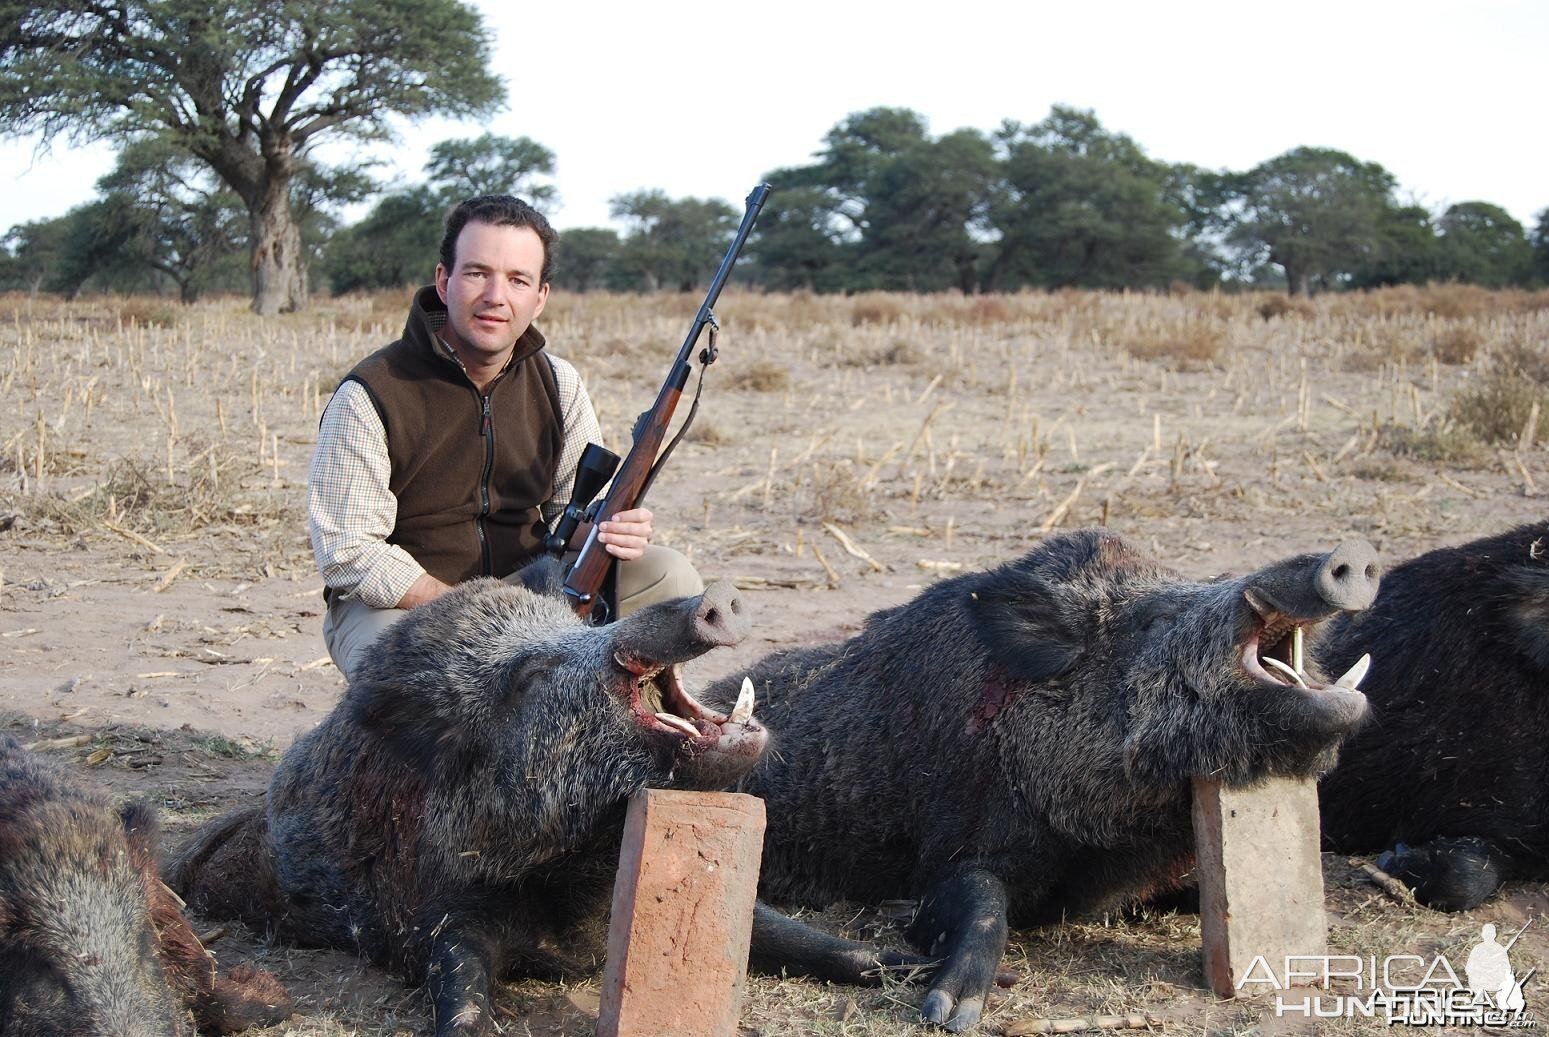 Wild Boars shot in Argentina